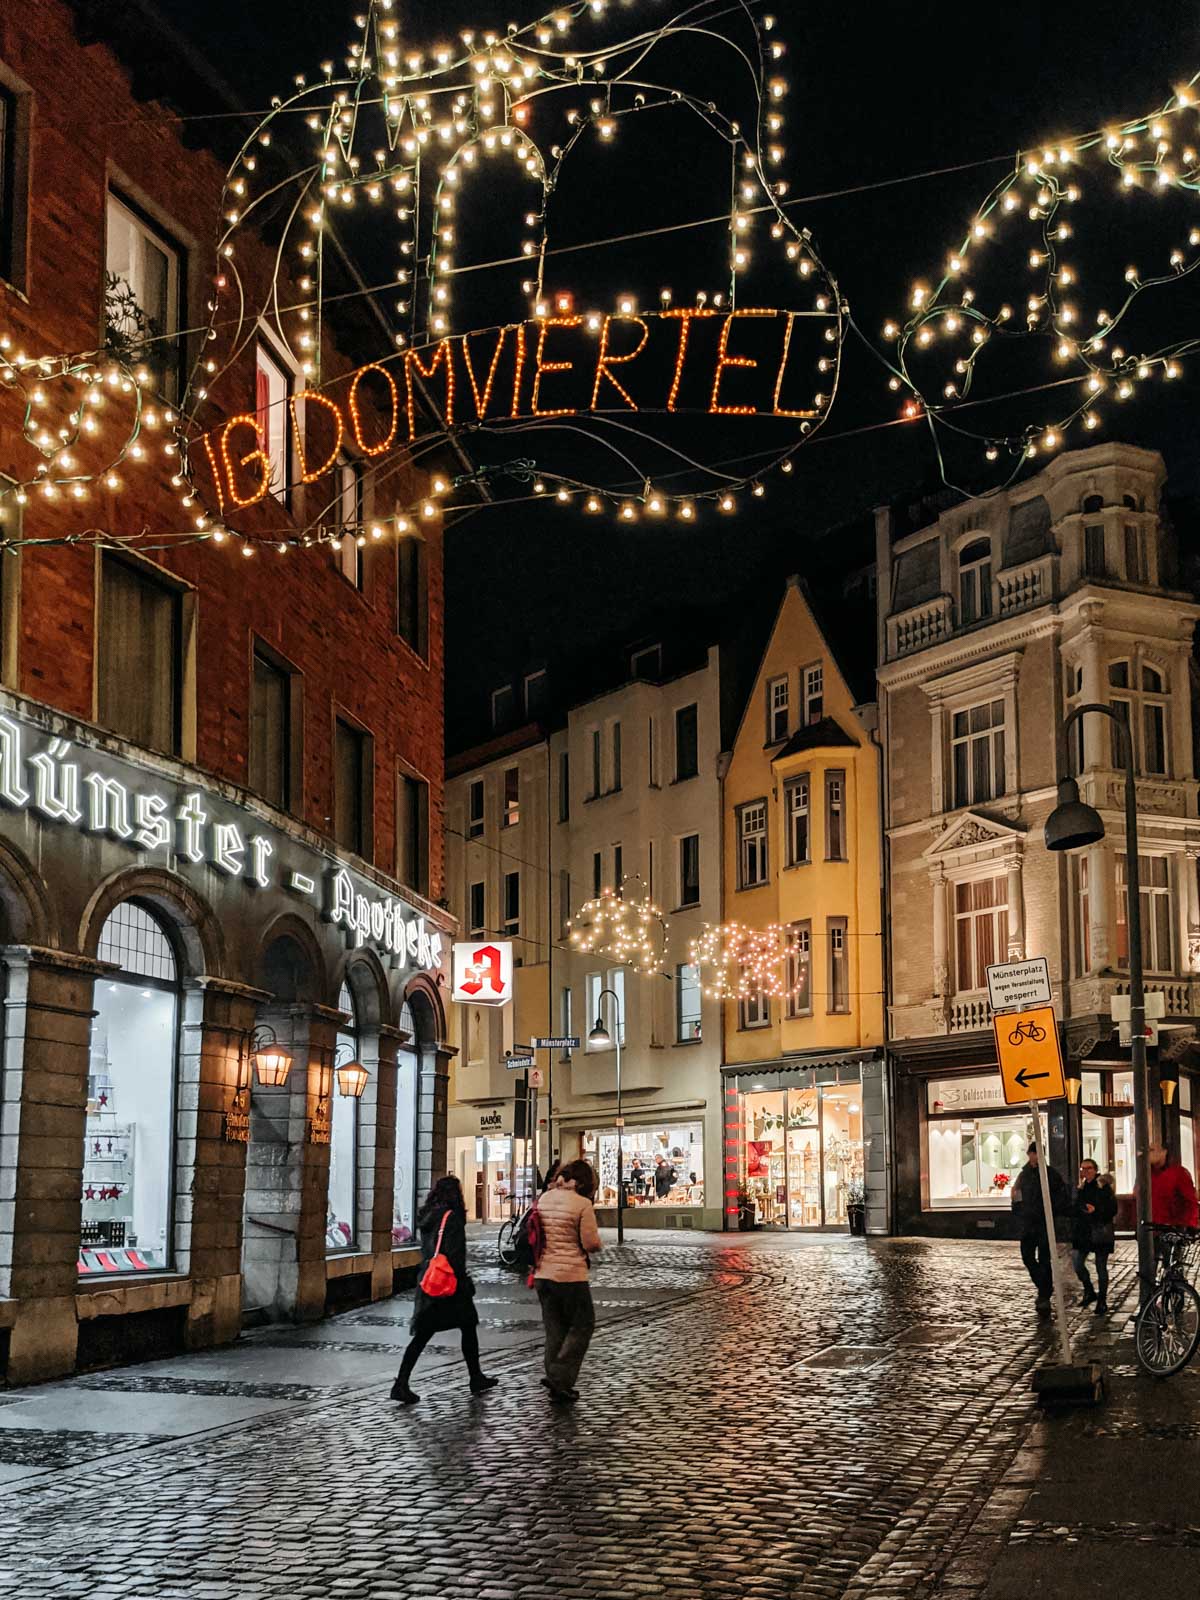 Aachen old town street at night with Christmas market illumination.